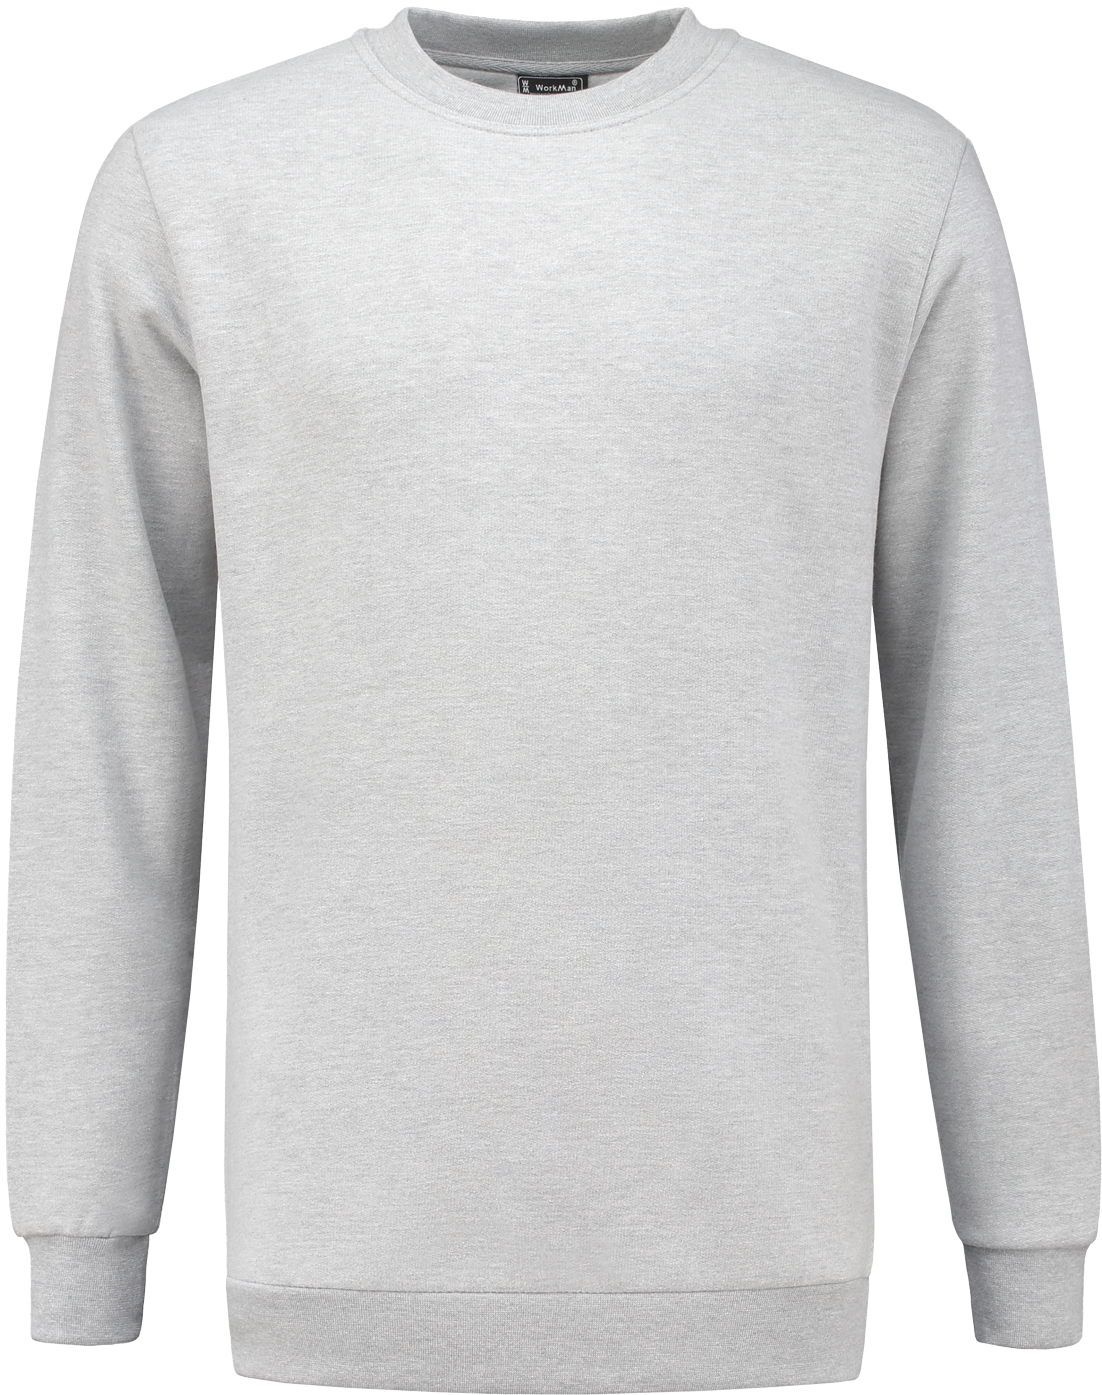 8242 Sweatshirt Outfitters Grau Melange